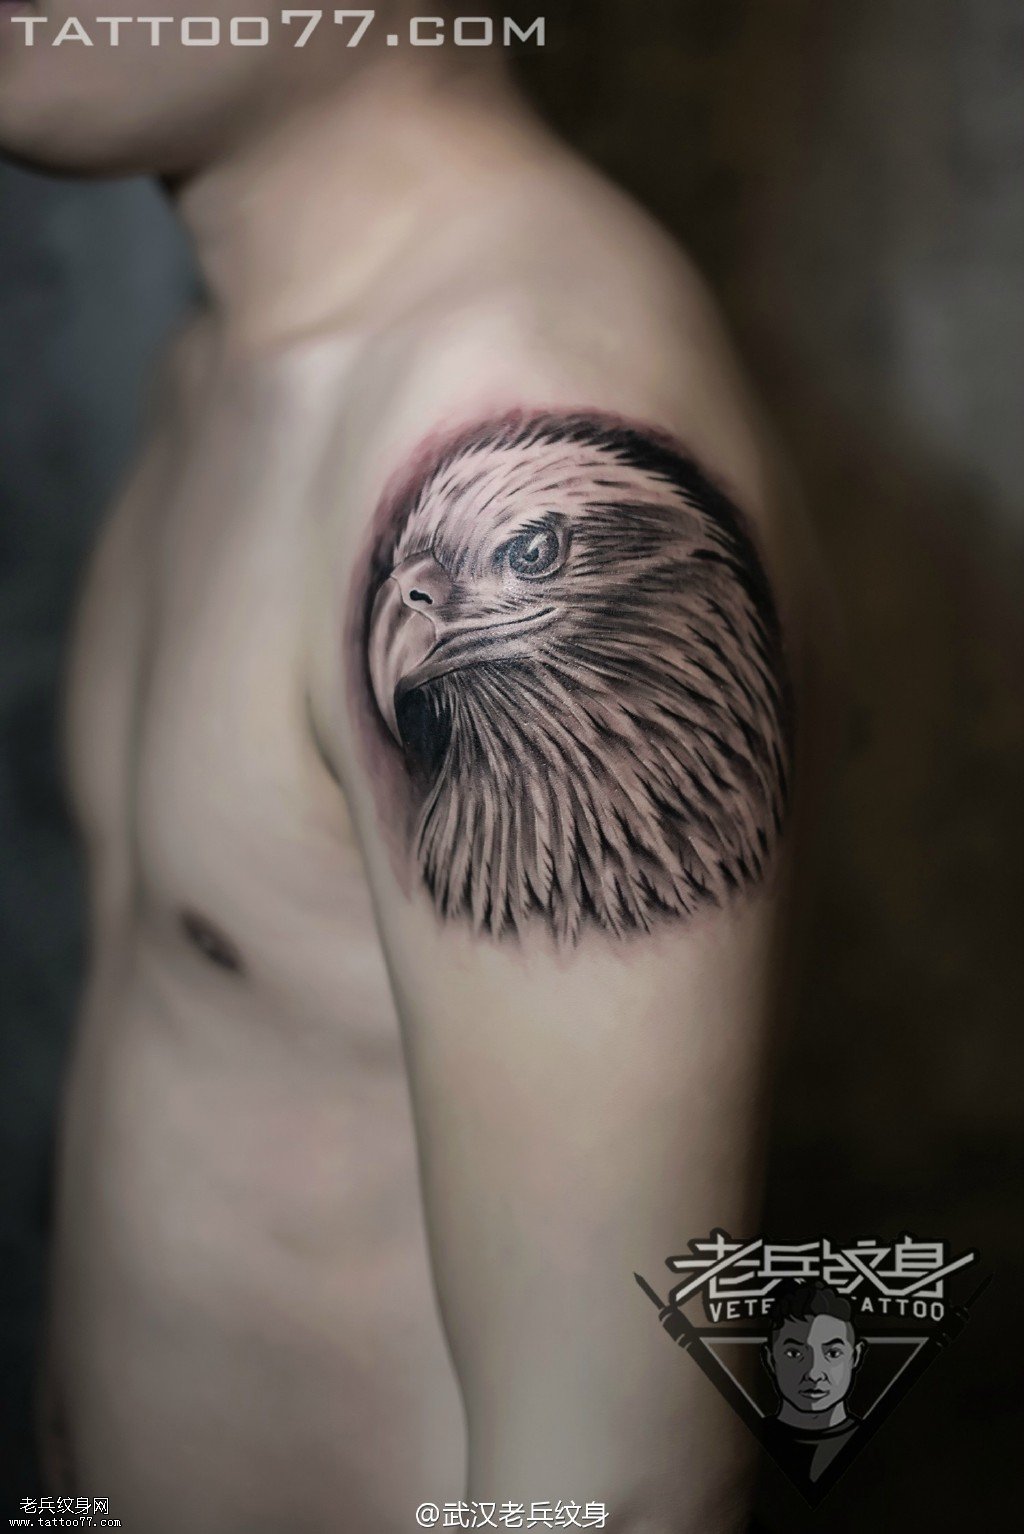 大臂鹰头纹身图案作品